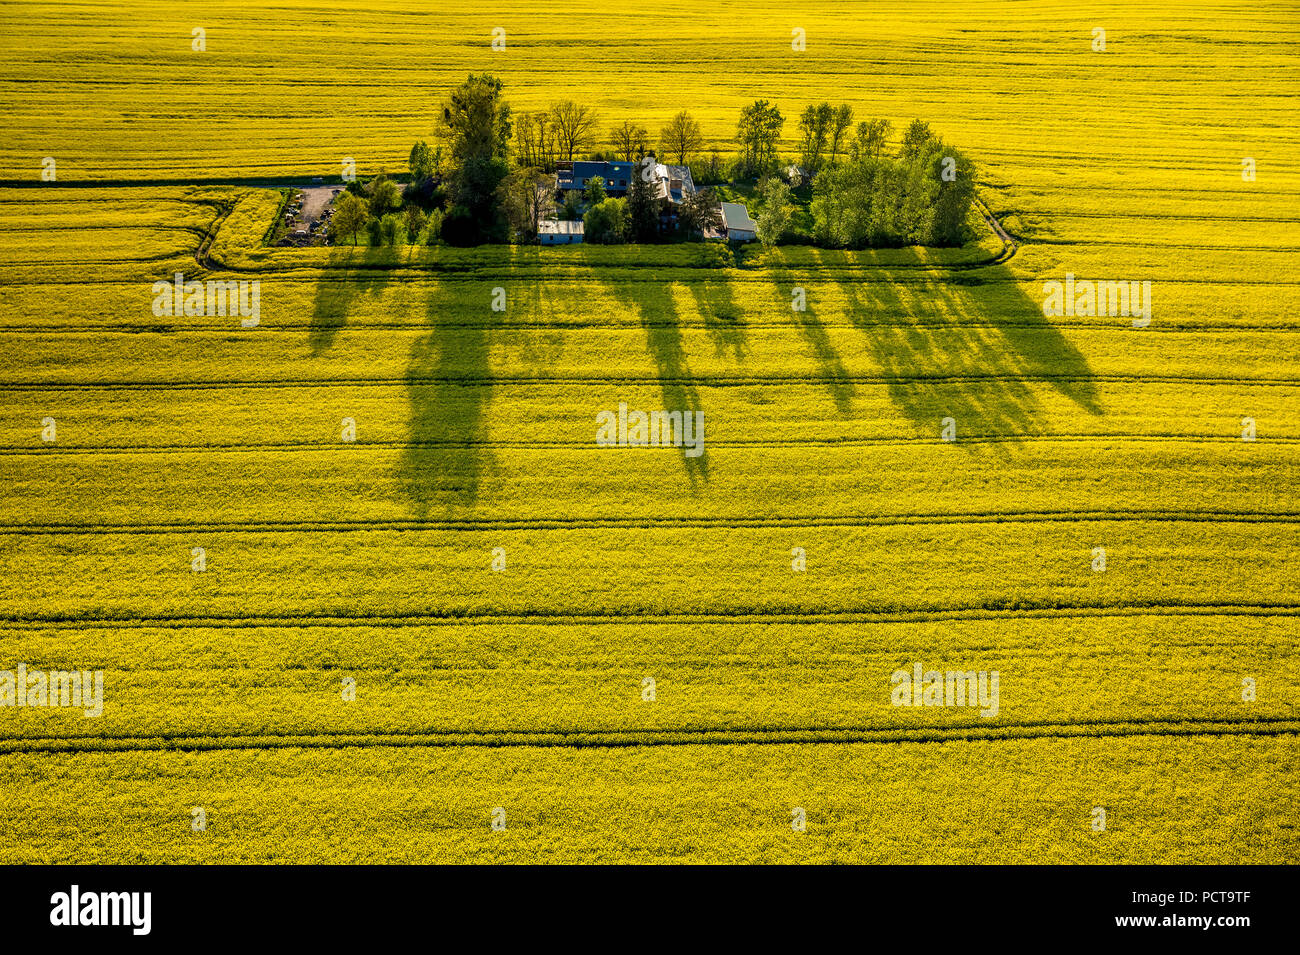 Bauernhof, Bauernhof in einem Raps Feld, Jabel, Mecklenburgische Seenplatte, Mecklenburg-Vorpommern, Deutschland Stockfoto